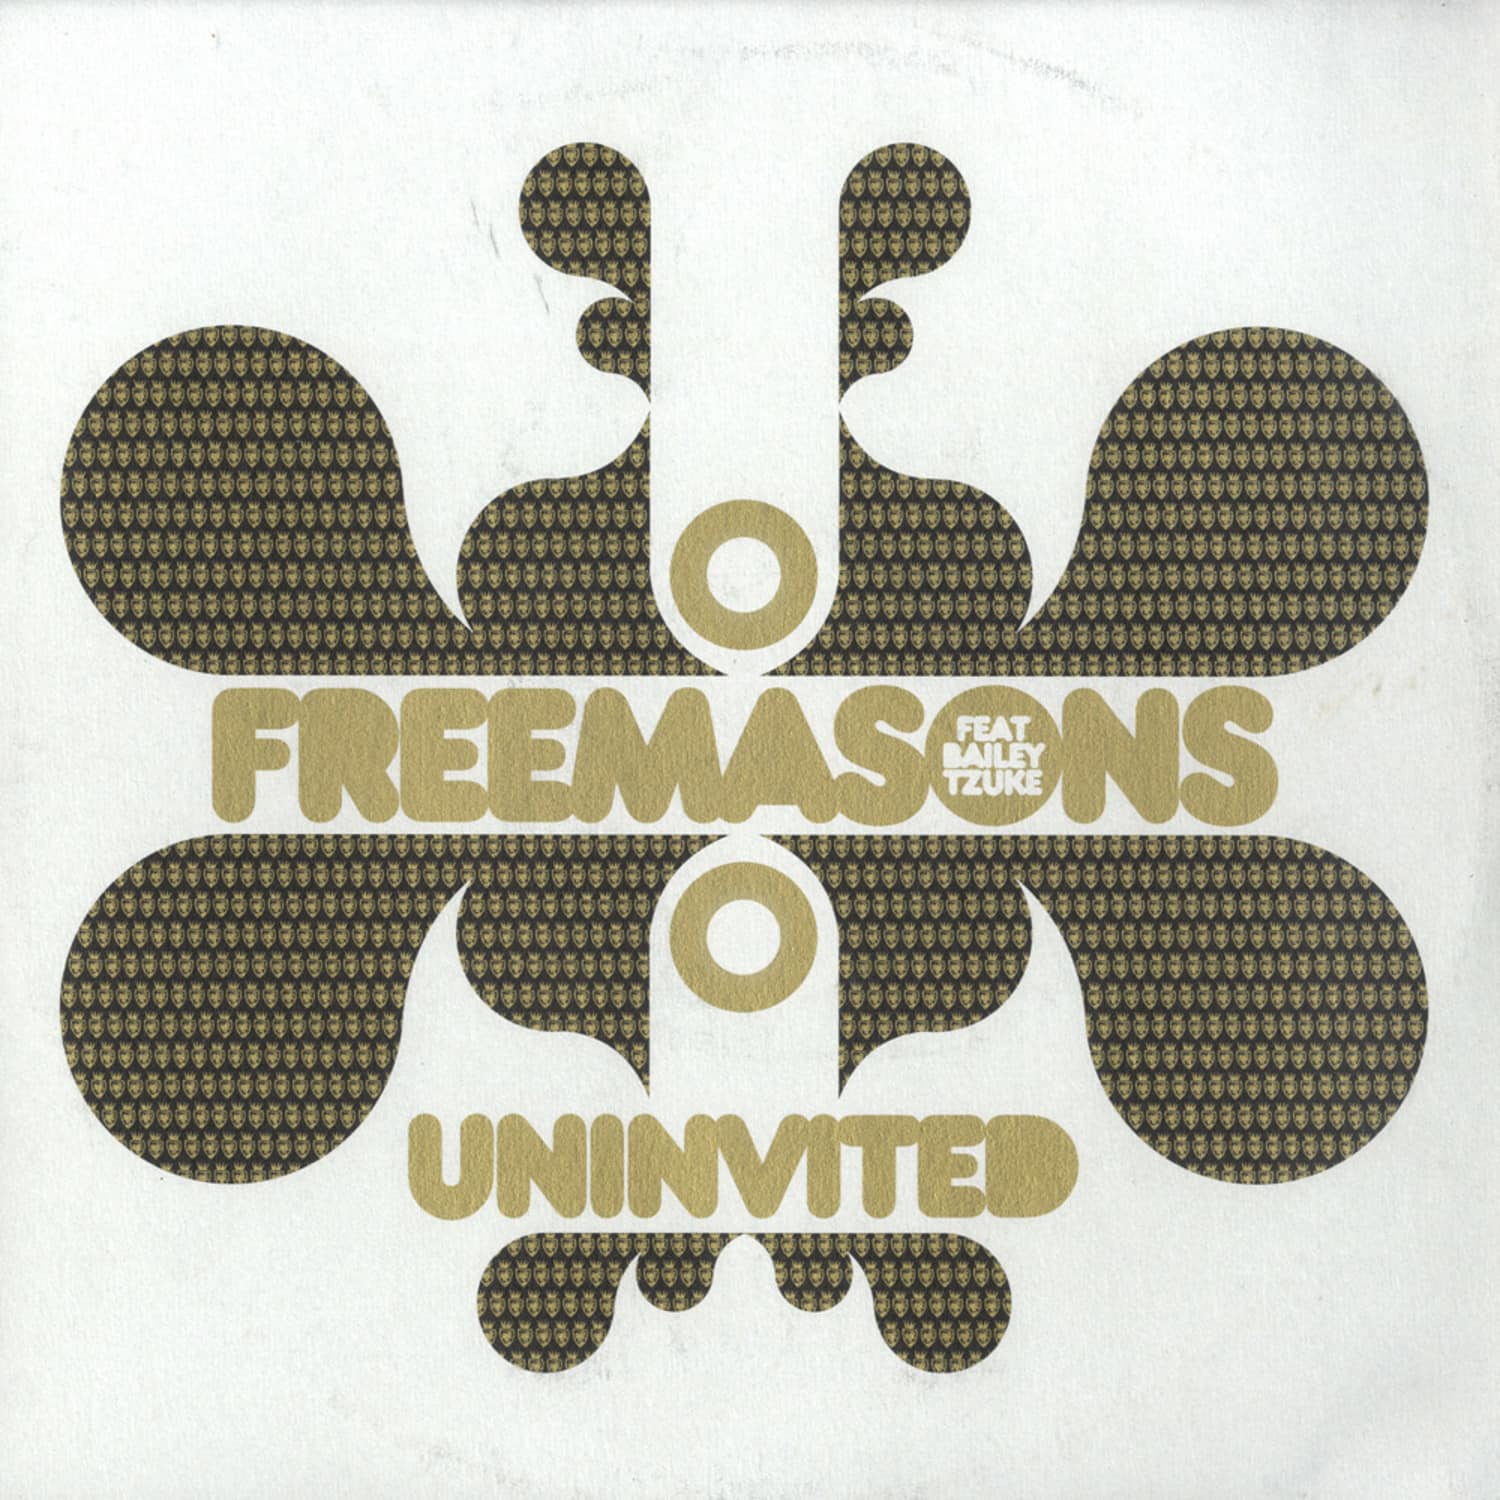 Freemasons Feat. Bailey Tzuke - UNINVITED